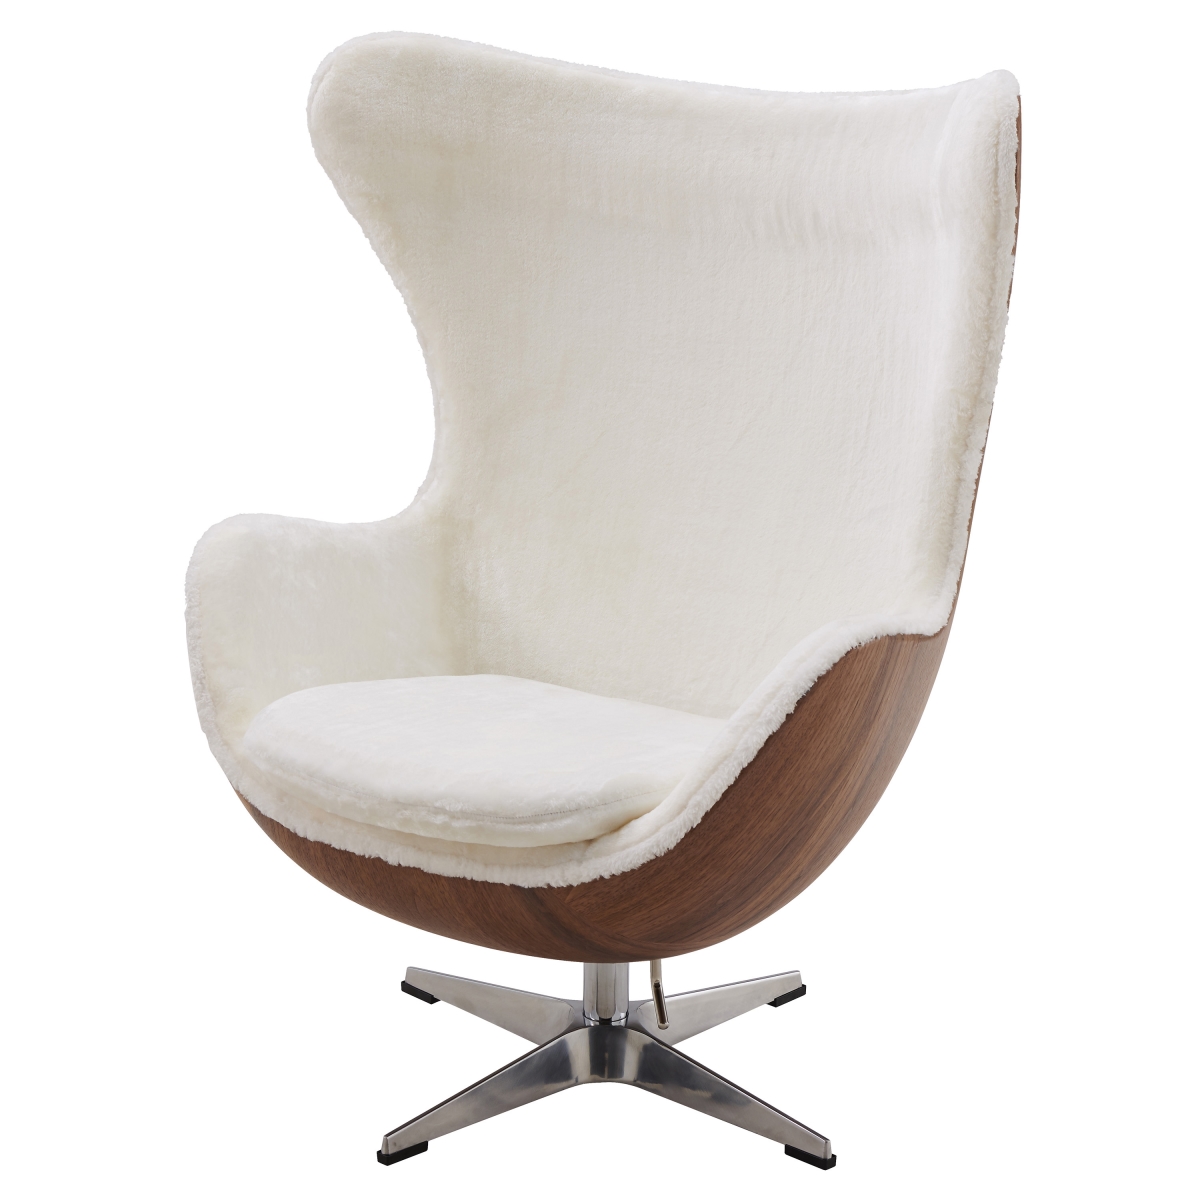 6300059-519 30 X 32.50 X 41.50 In. Axis Swivel Rocker Chair, Twizel Faux Fur